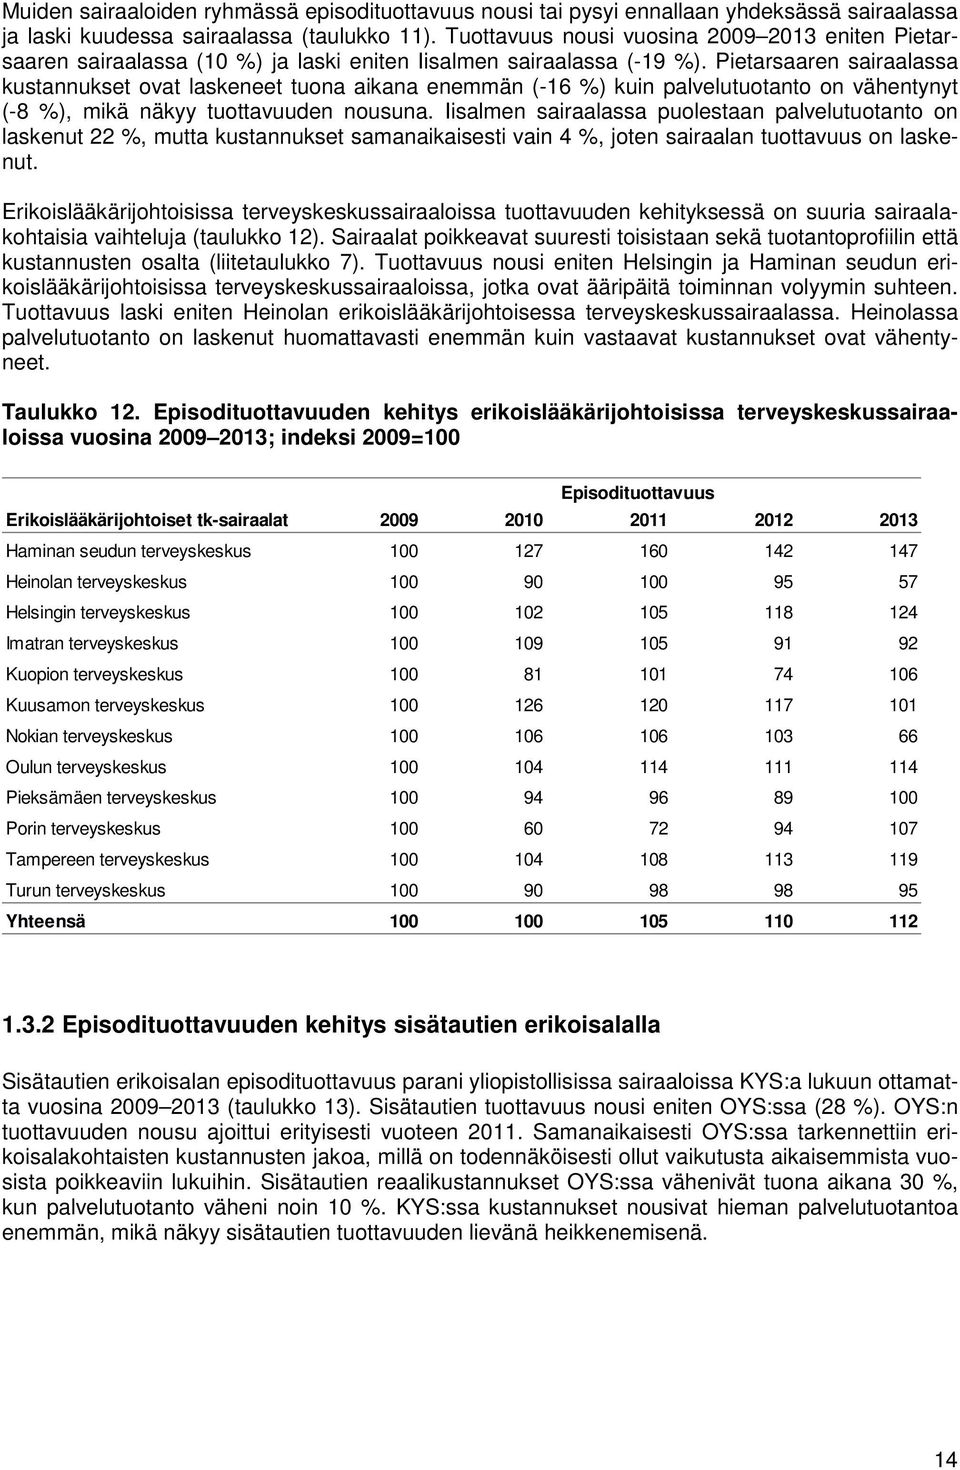 Pietarsaaren sairaalassa kustannukset ovat laskeneet tuona aikana enemmän (-16 %) kuin palvelutuotanto on vähentynyt (-8 %), mikä näkyy tuottavuuden nousuna.